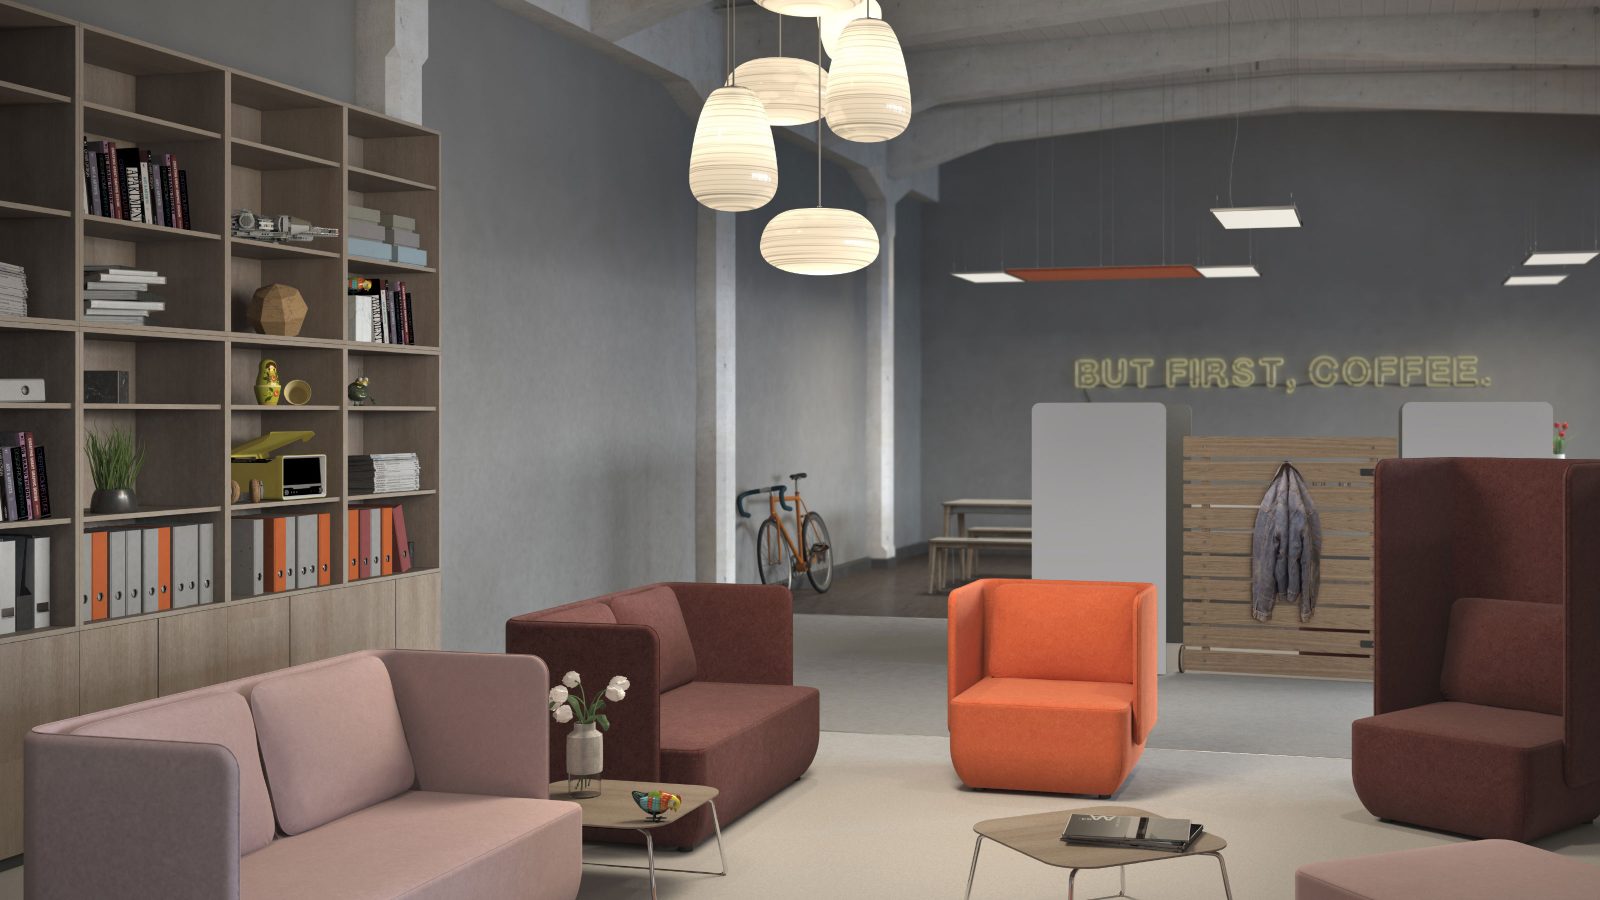 Rendering zeigt eine Büroszene mit einer Loungeecke. Darin stehen Sofas, Sessel und Sitzhocker in den Farben Rosa, Braun und Orange sowie zwei Beistelltische. Links an der Wand steht ein hohes Büroregal.